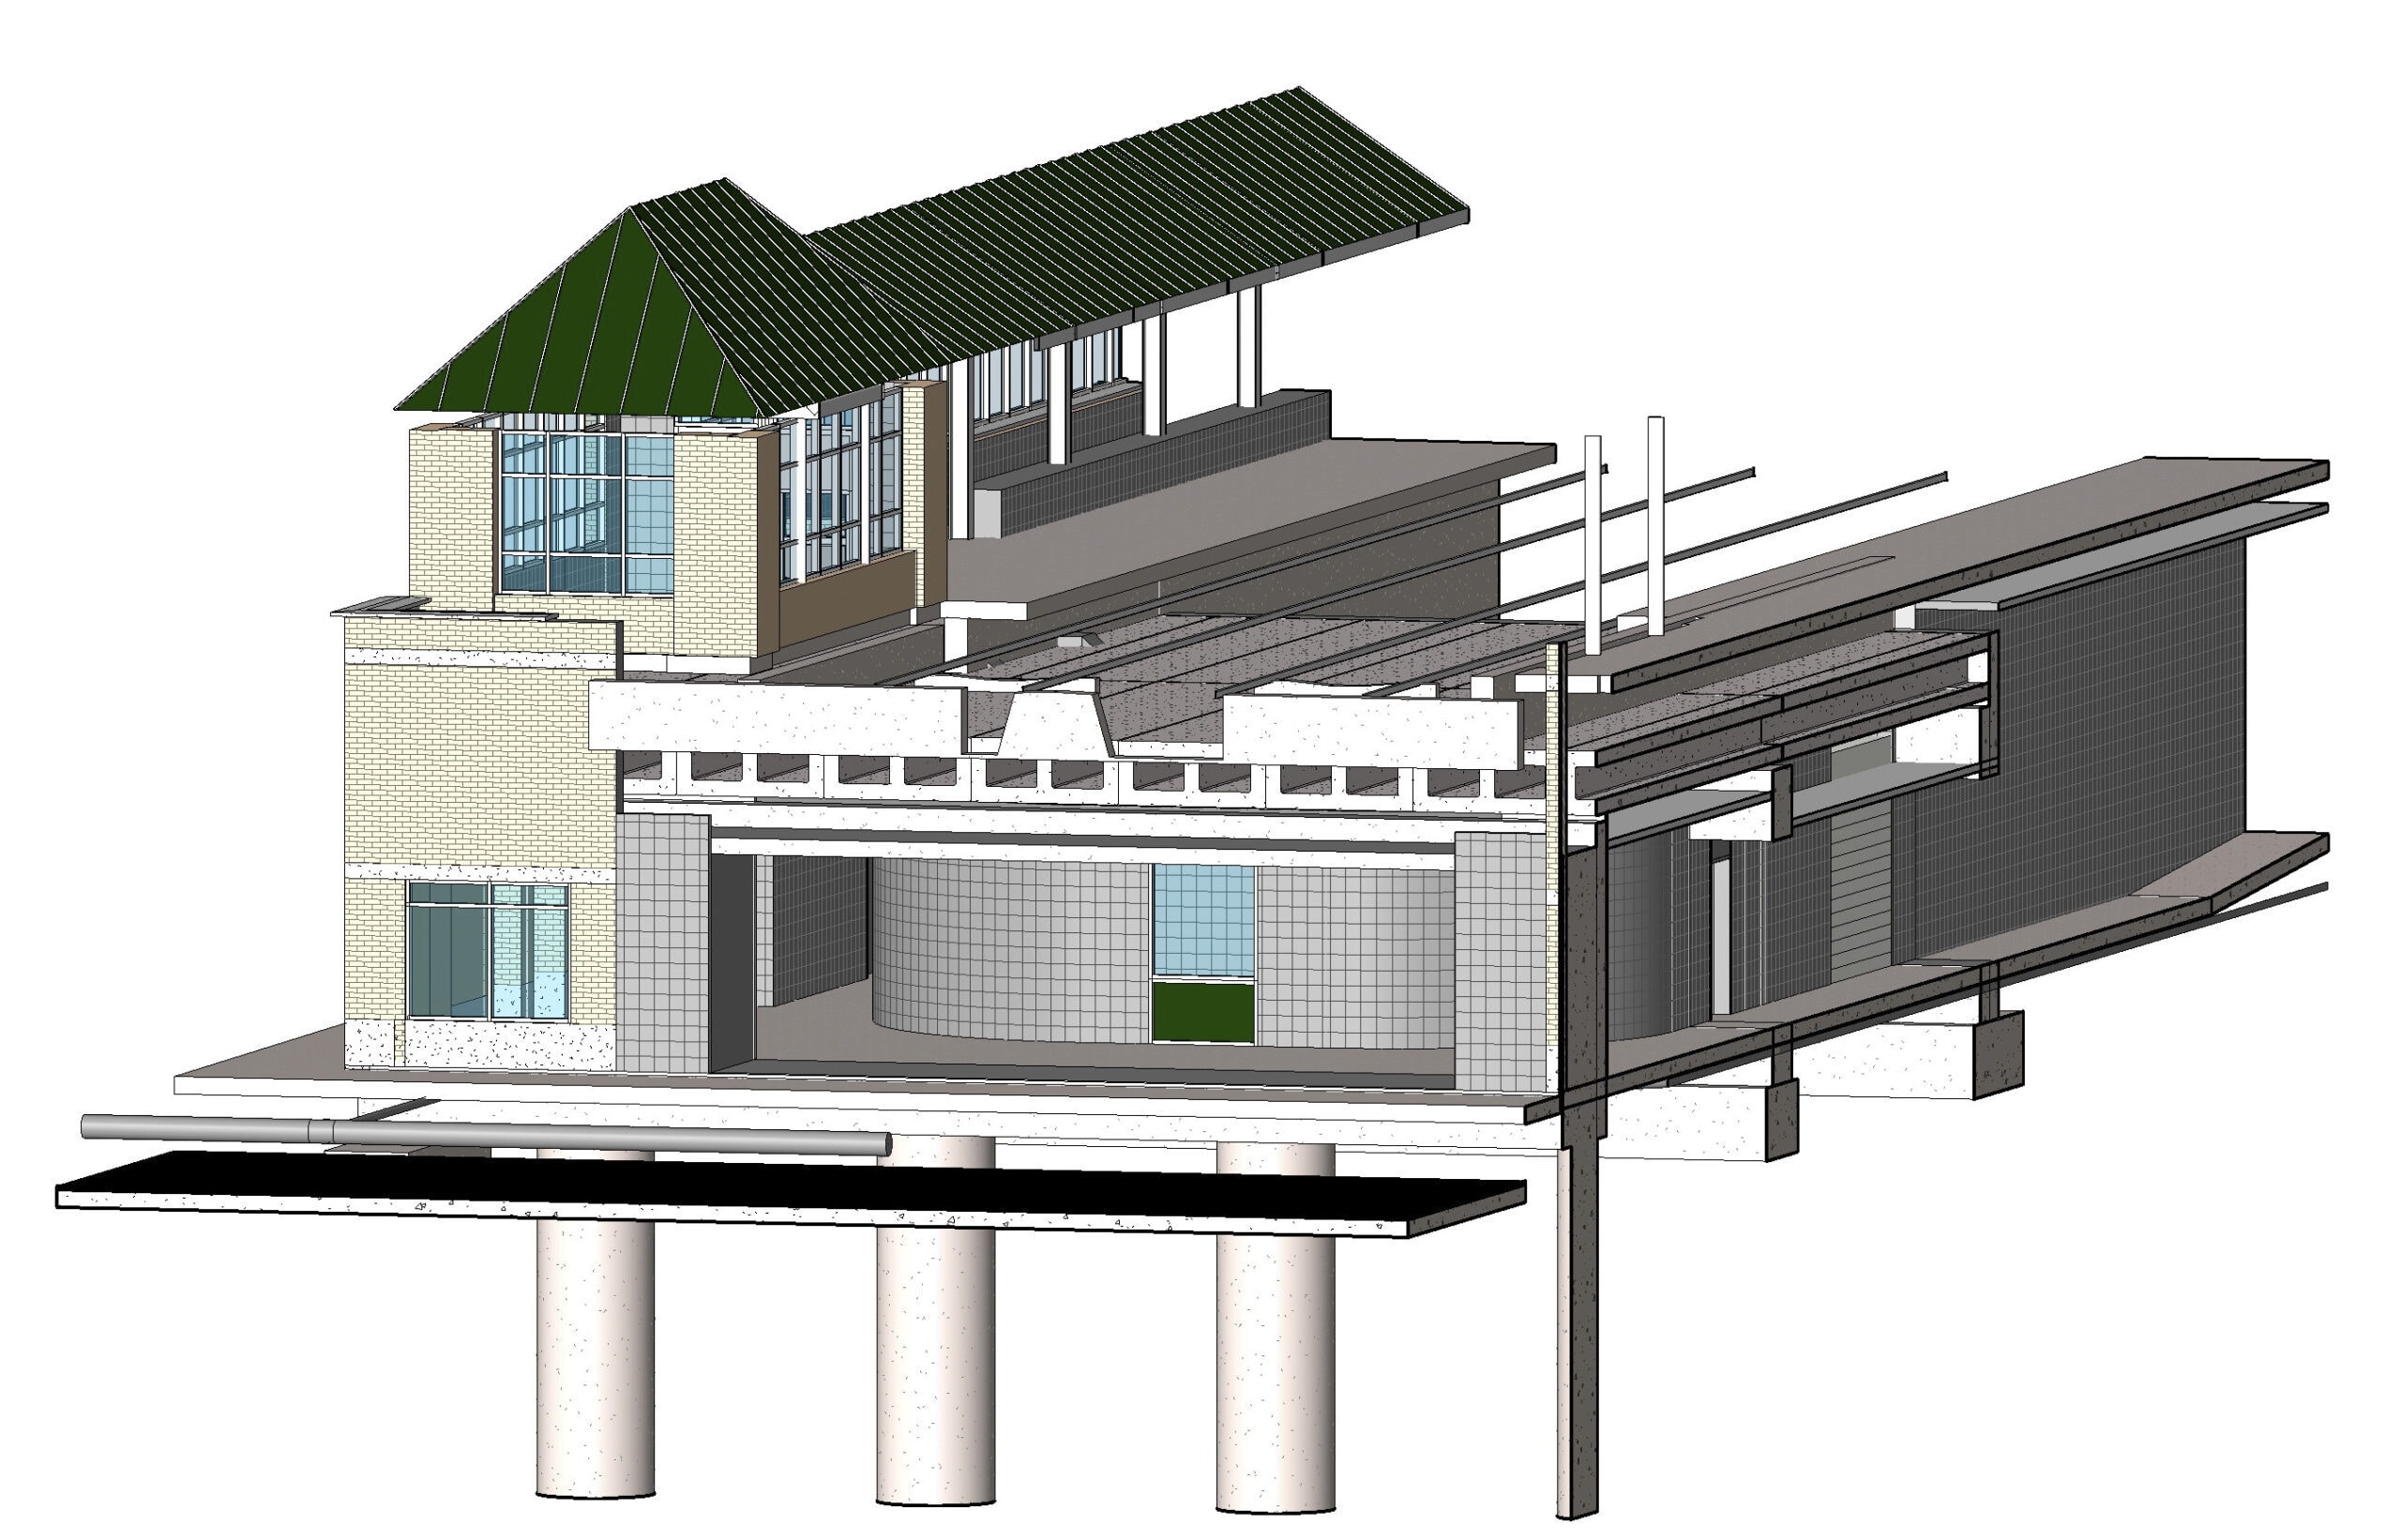 Ravenswood Metra Station (rendering)